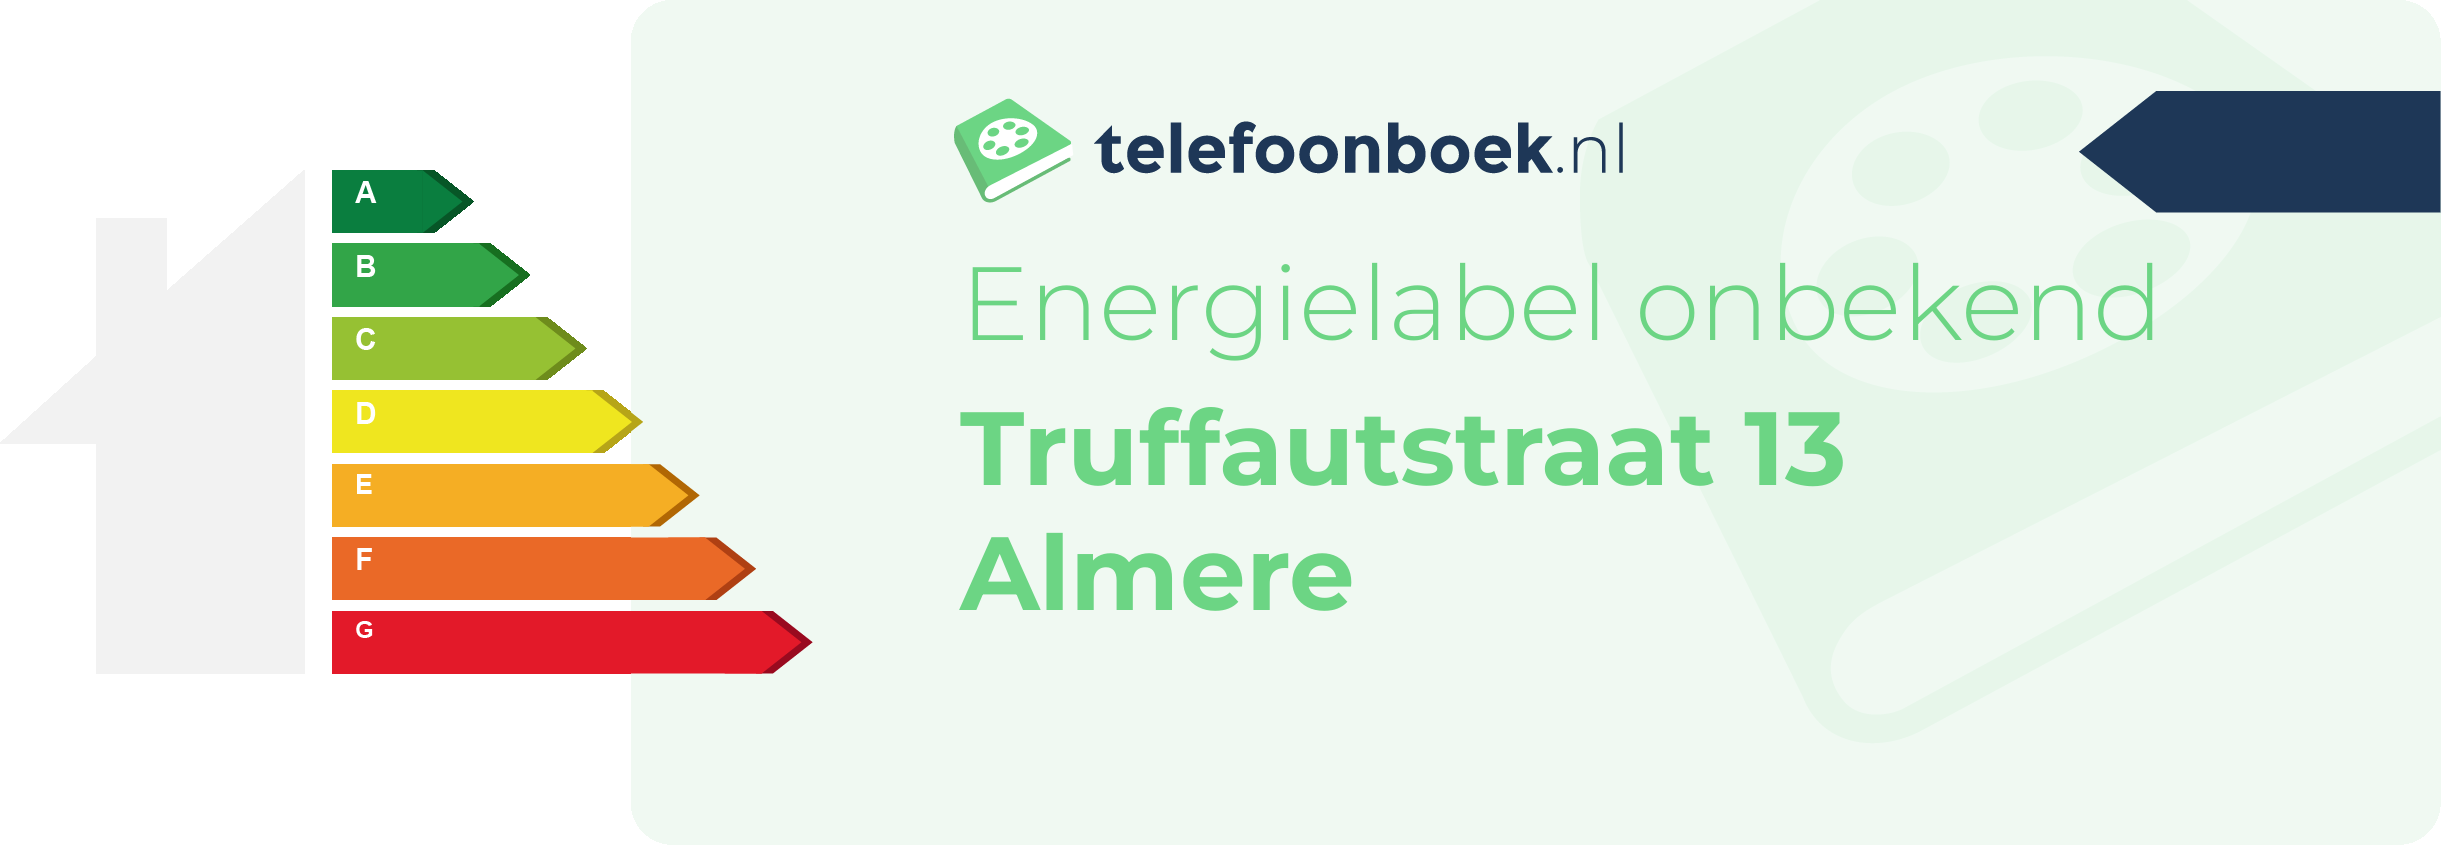 Energielabel Truffautstraat 13 Almere